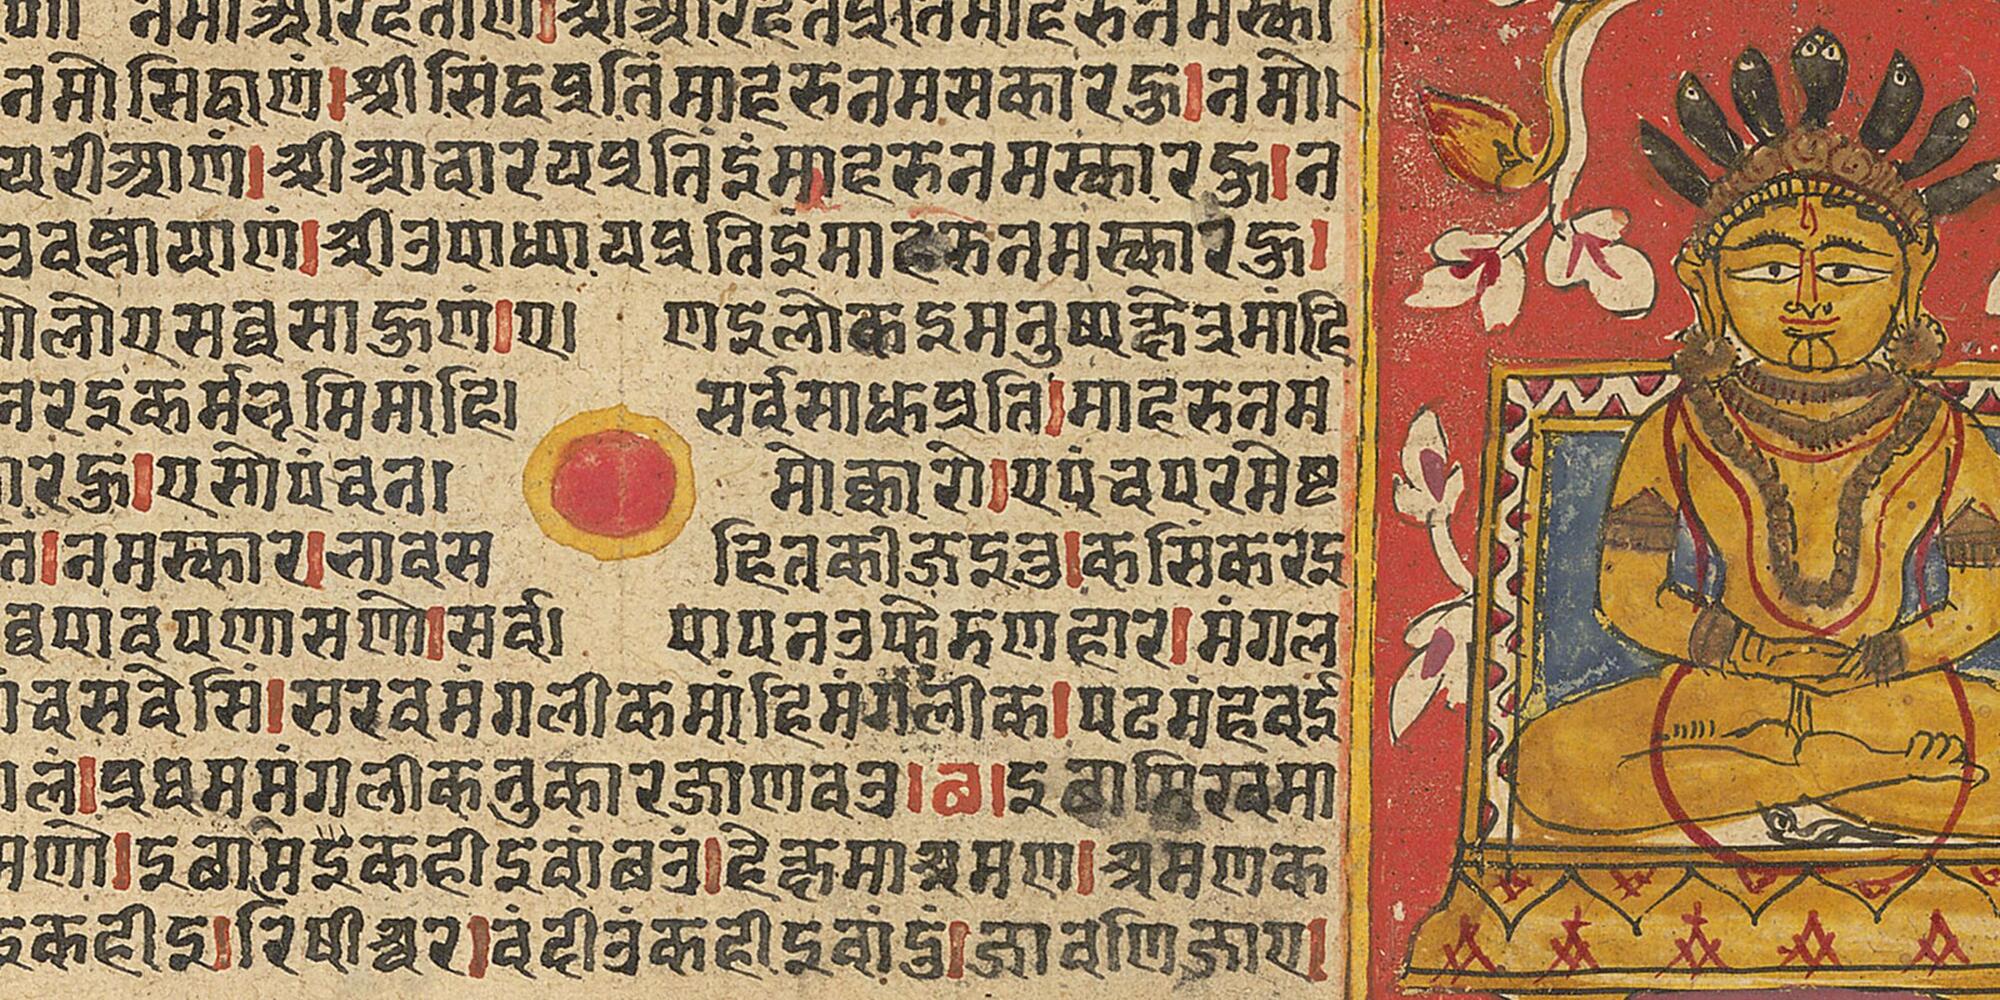 Jain Language